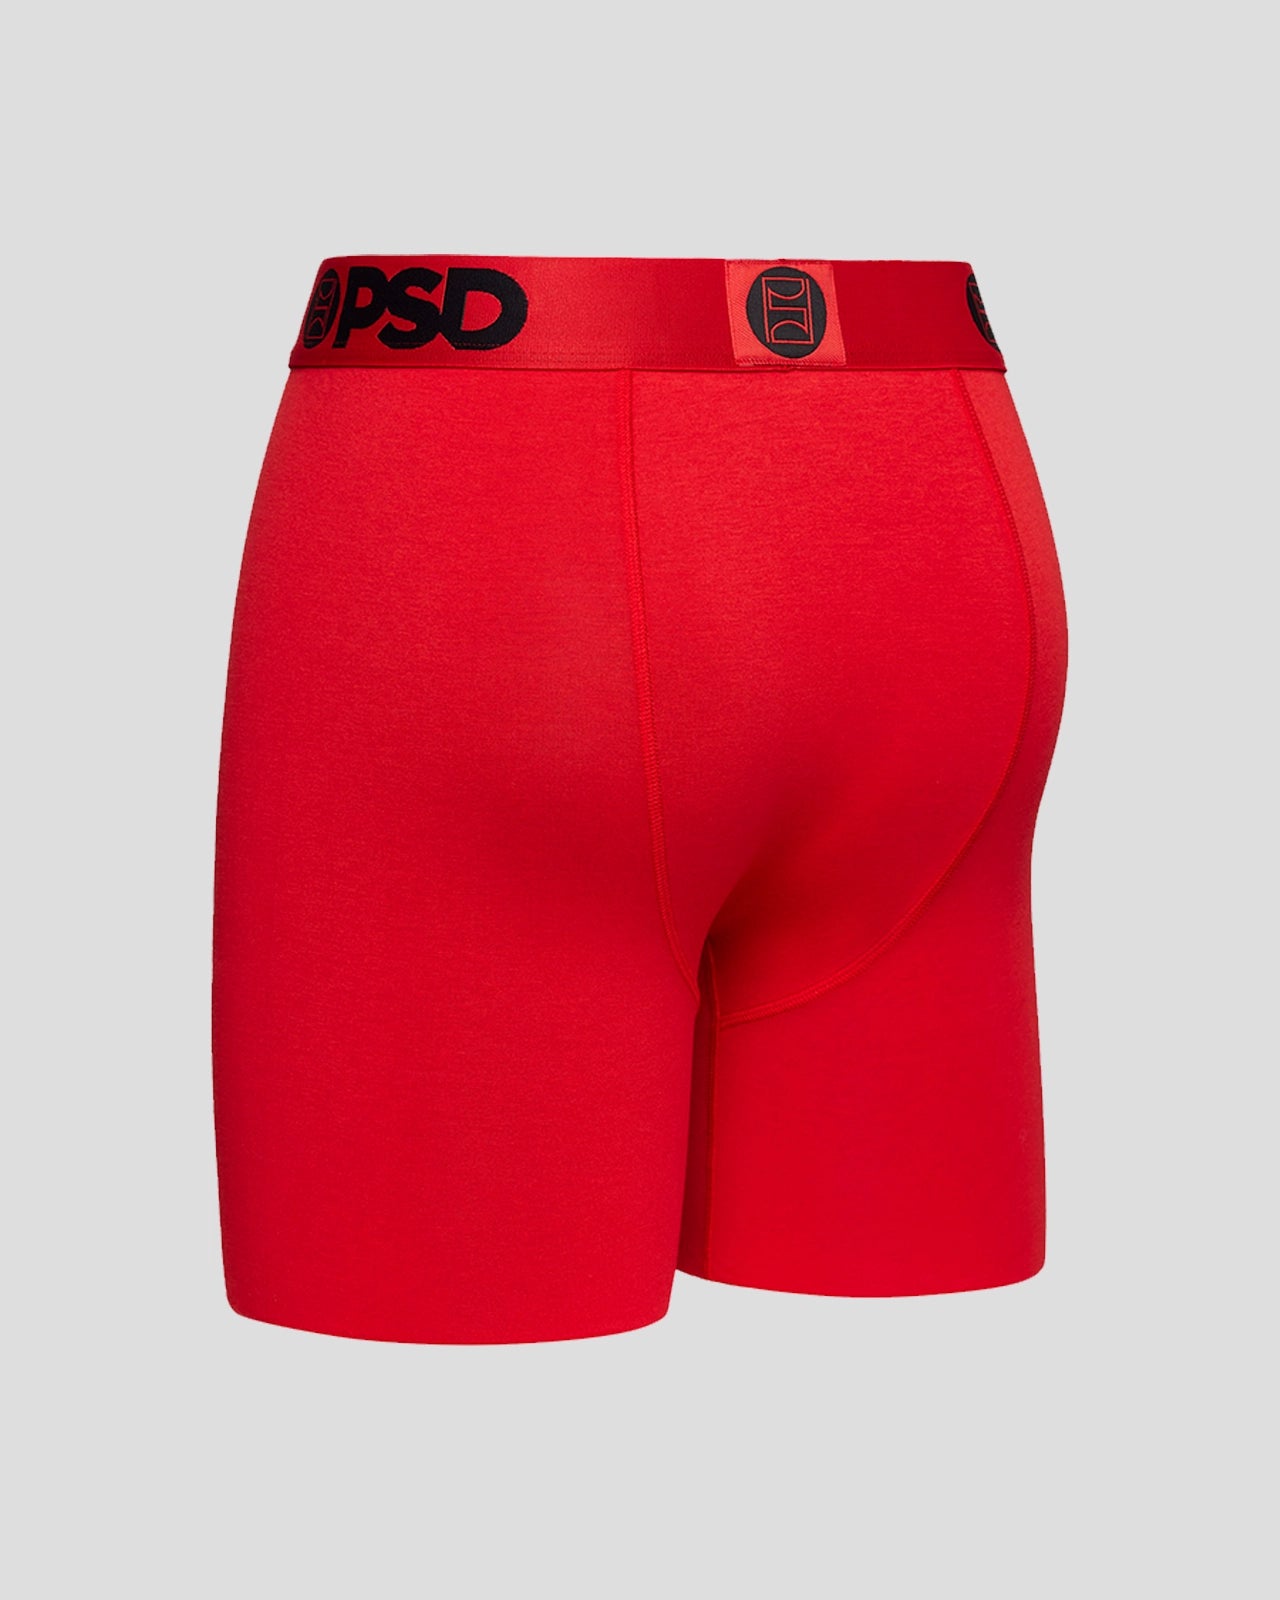 Modal 3 Pack - Red | Standard Length - Modal | PSD®